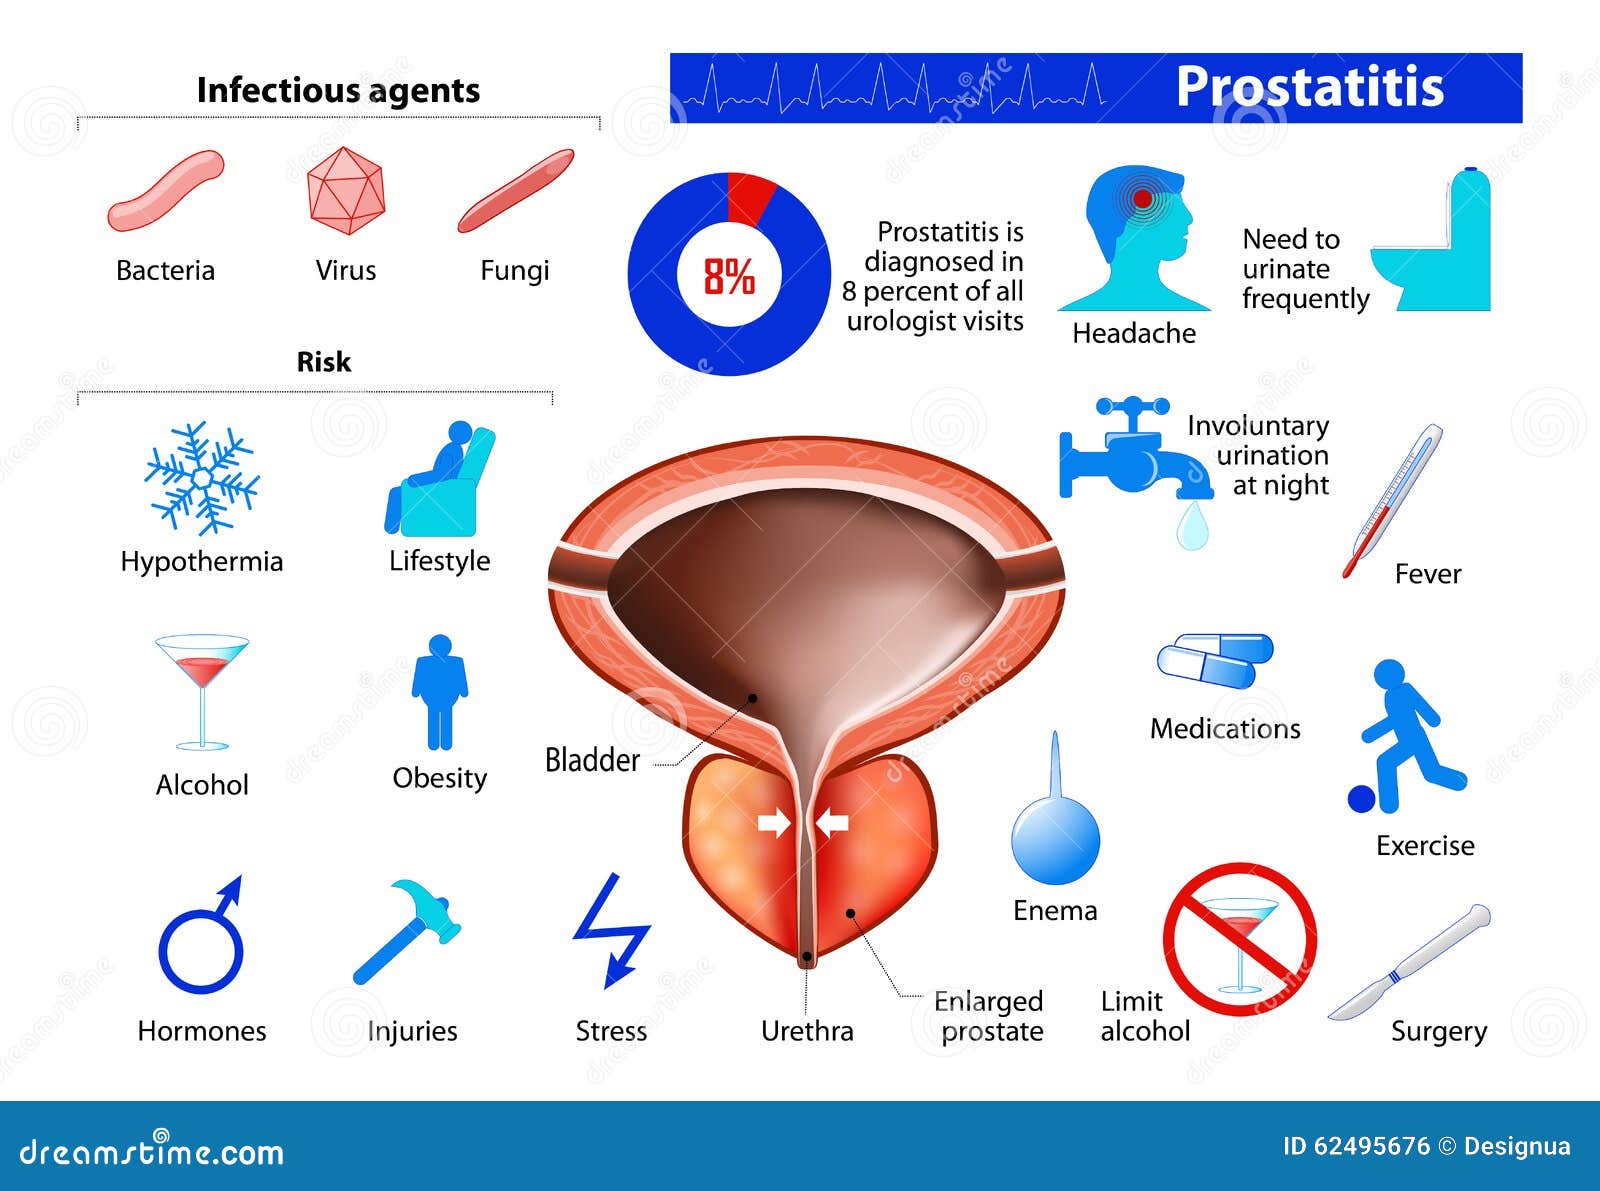 prostatitis mint a fenyegető antibiotikumok csoport prosztatitis